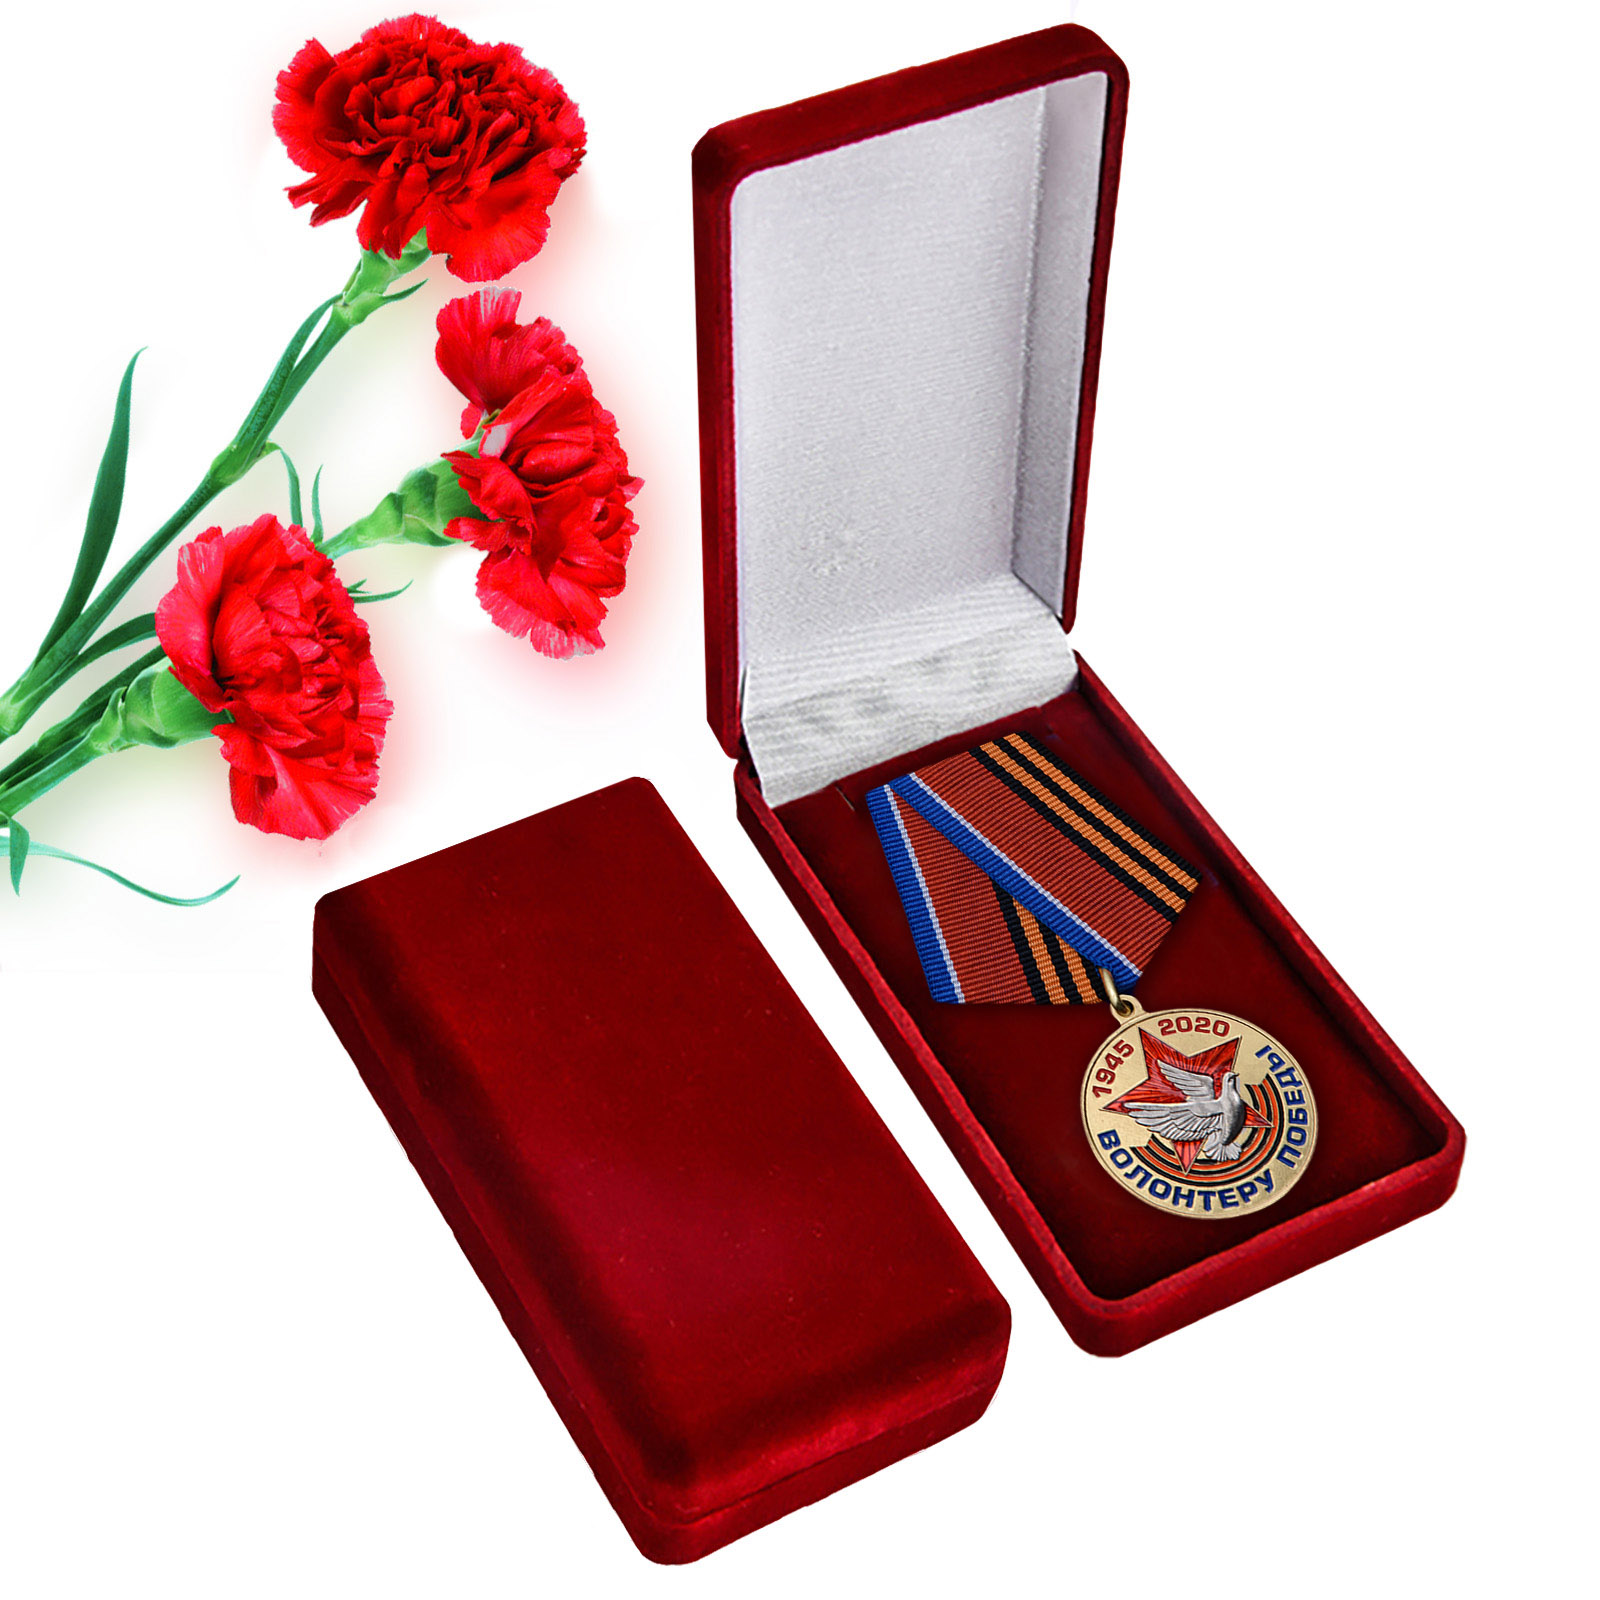 Купить памятную медаль Волонтеру Победы оптом или в розницу